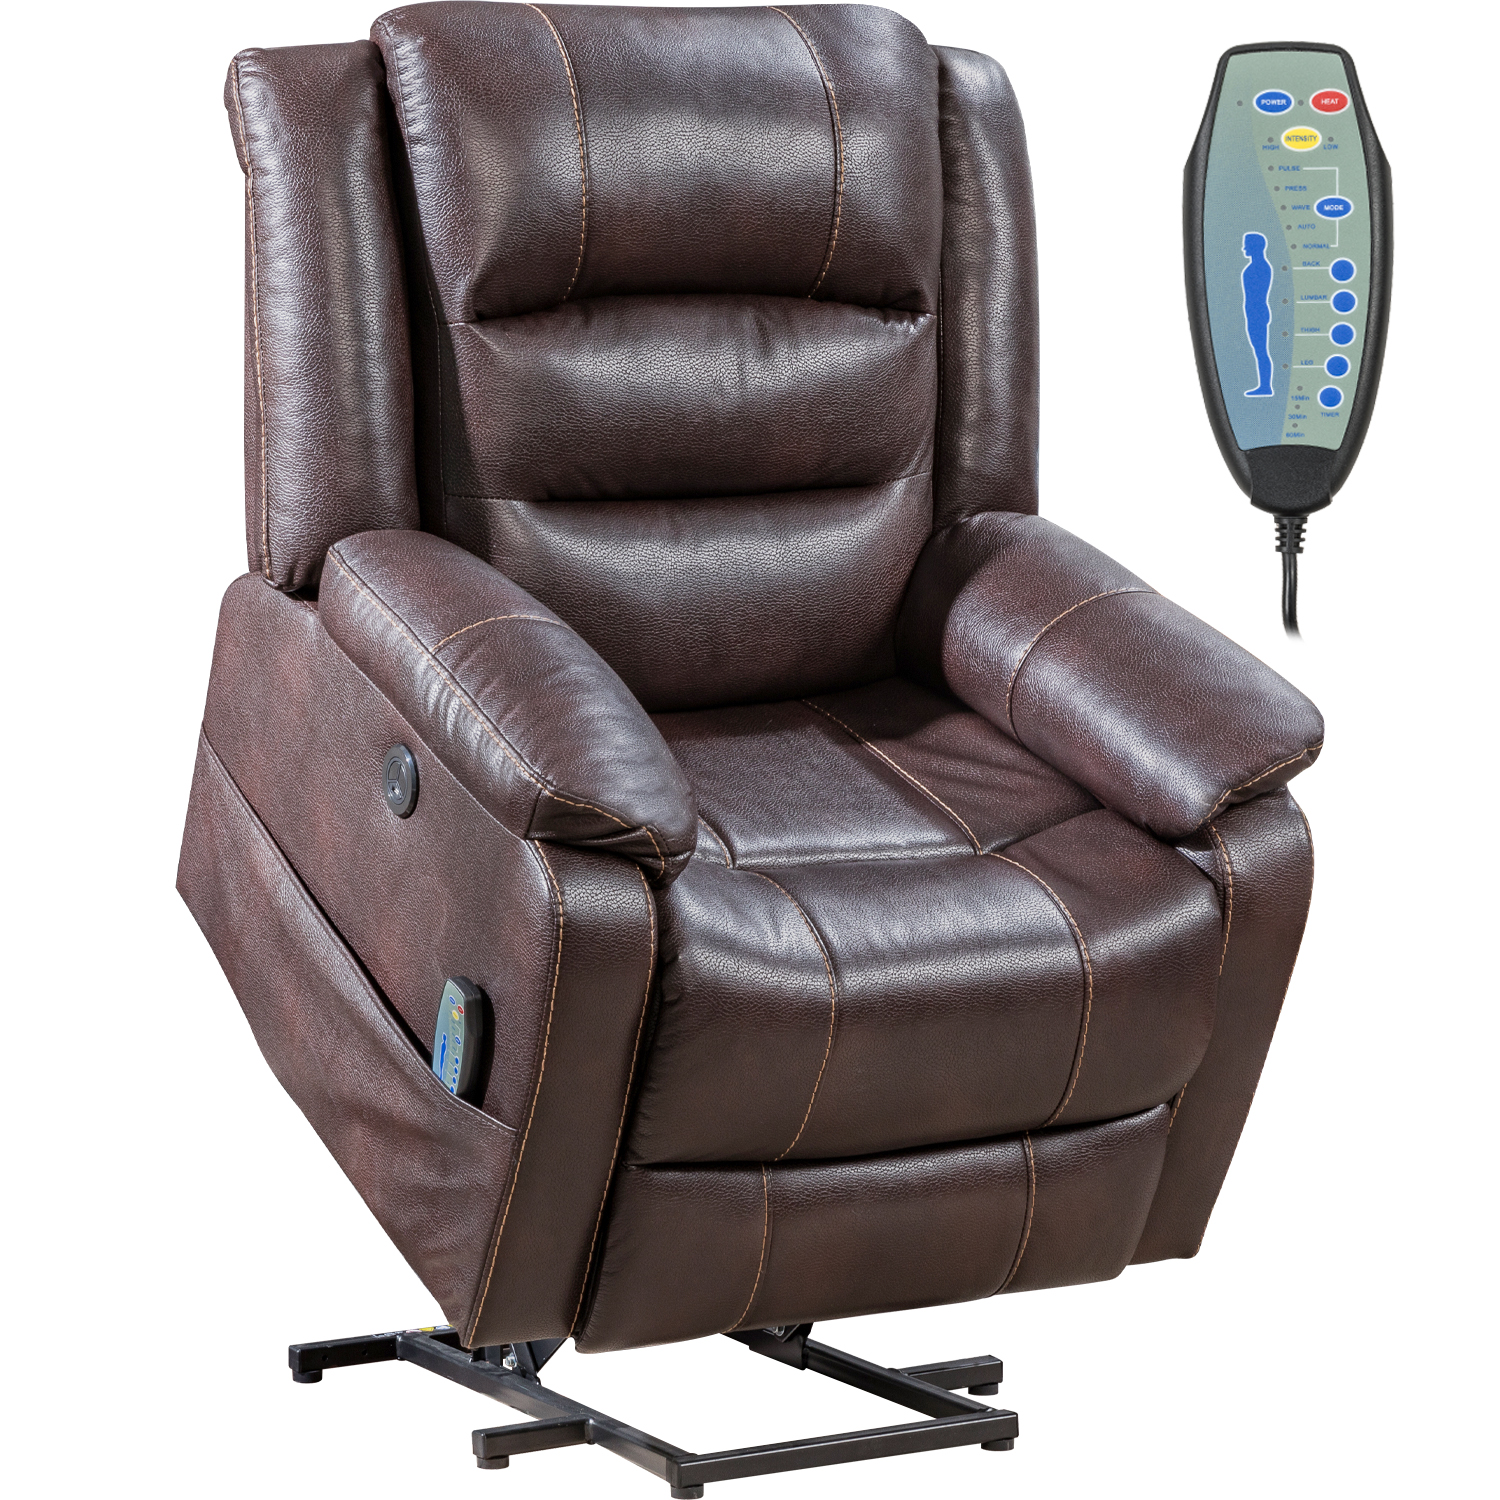 Lift Chair for Elderly Massage Chair Lift Chair Power Recliner Recliner